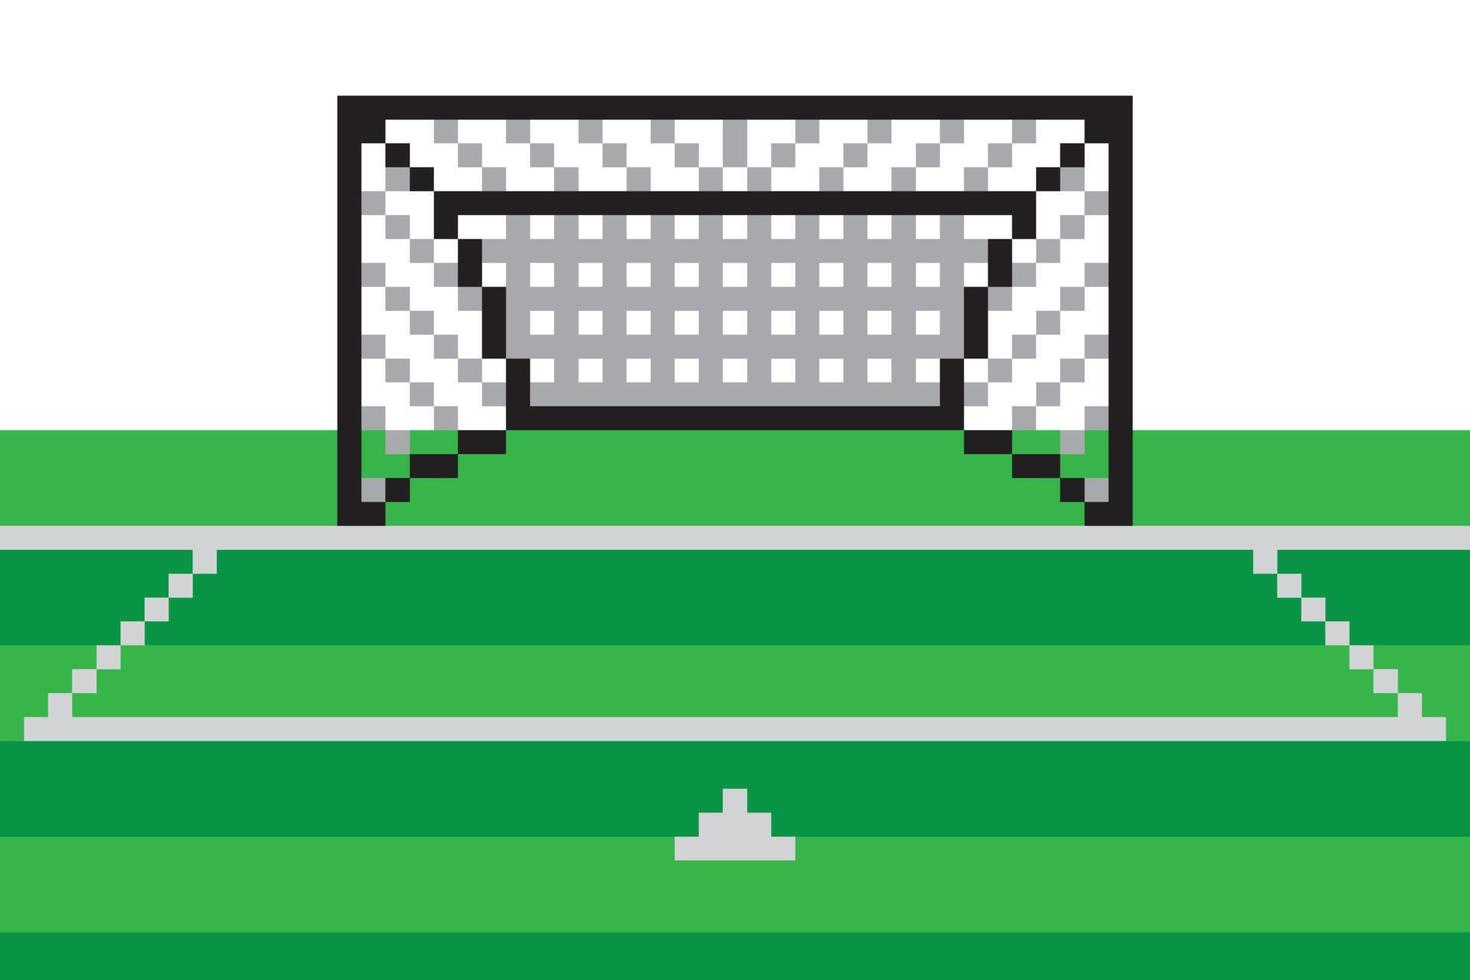 Pixel art soccer goal field vector